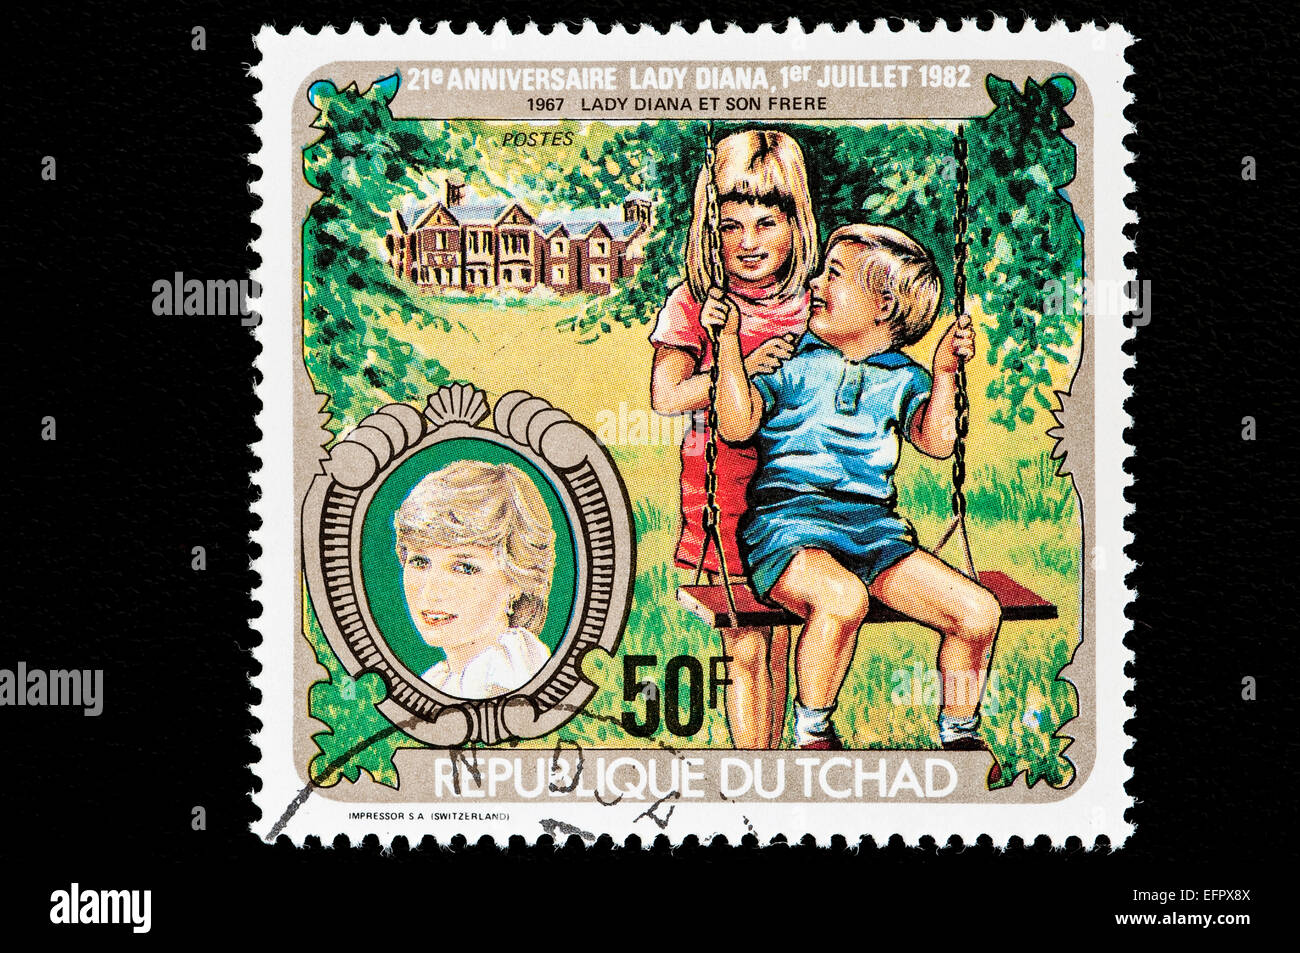 Republik Tschad ausgegebenen Briefmarken zum 21. Geburtstag von Lady Diana. Republik Tschad liegt in Zentralafrika. Stockfoto